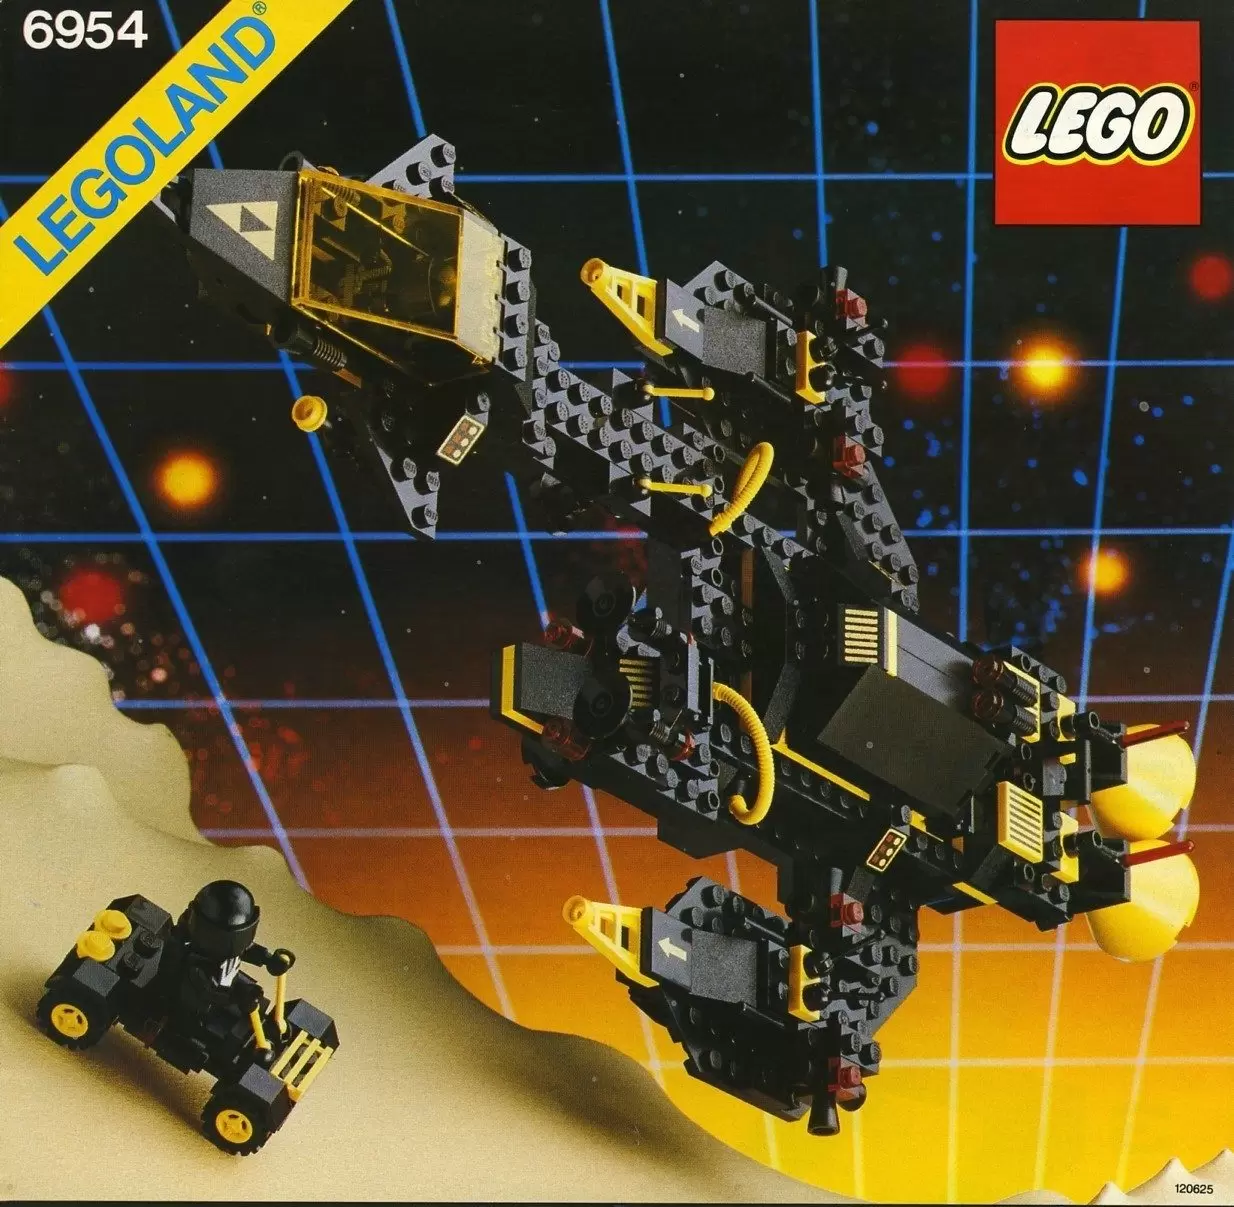 LEGO Space - Renegade